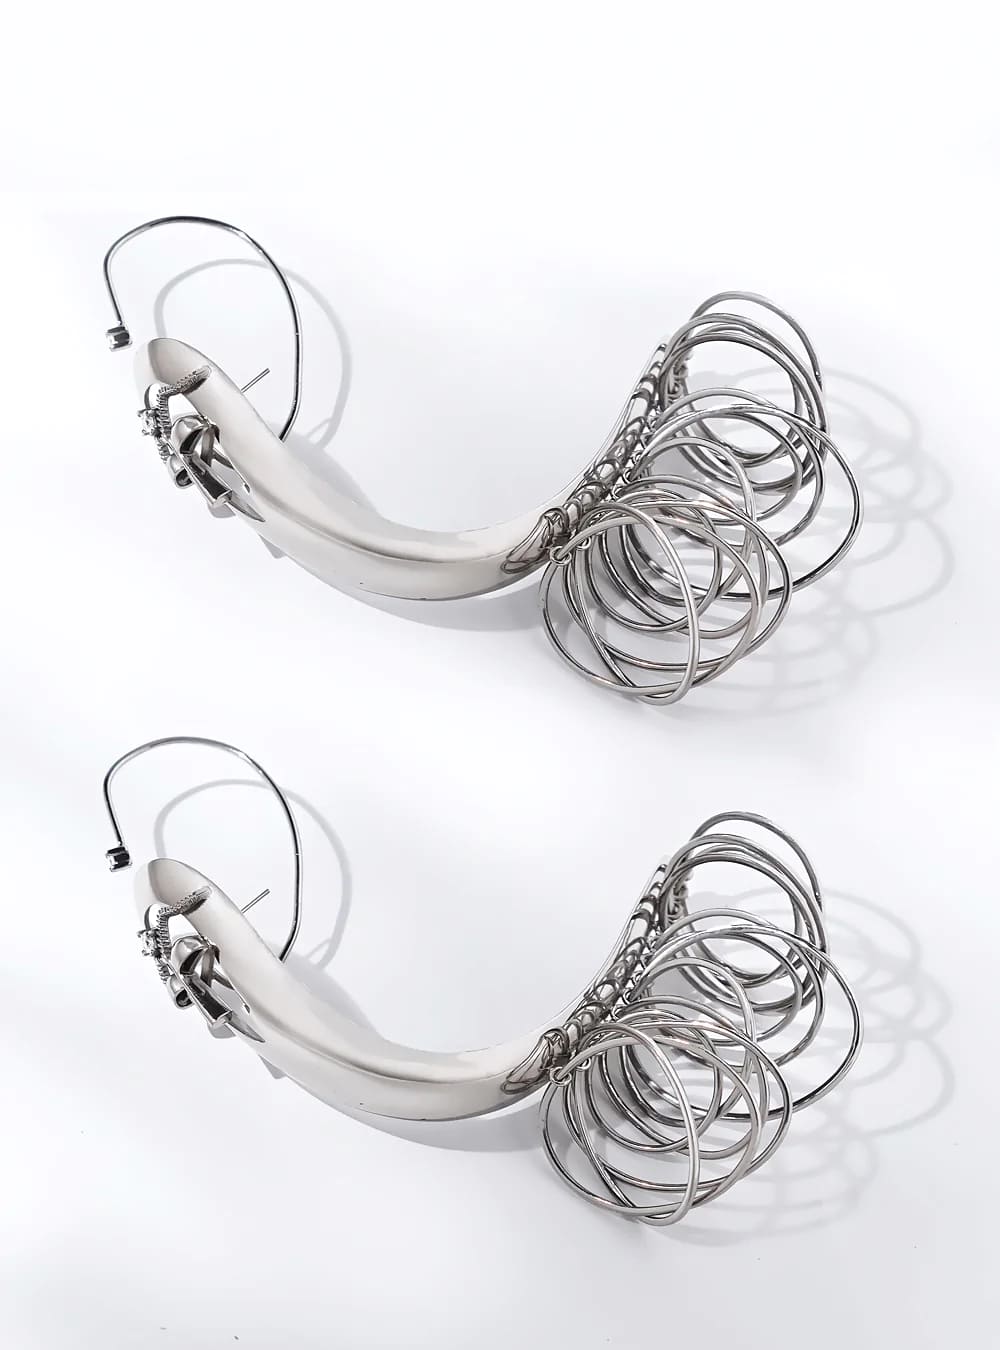 Omega back type earrings